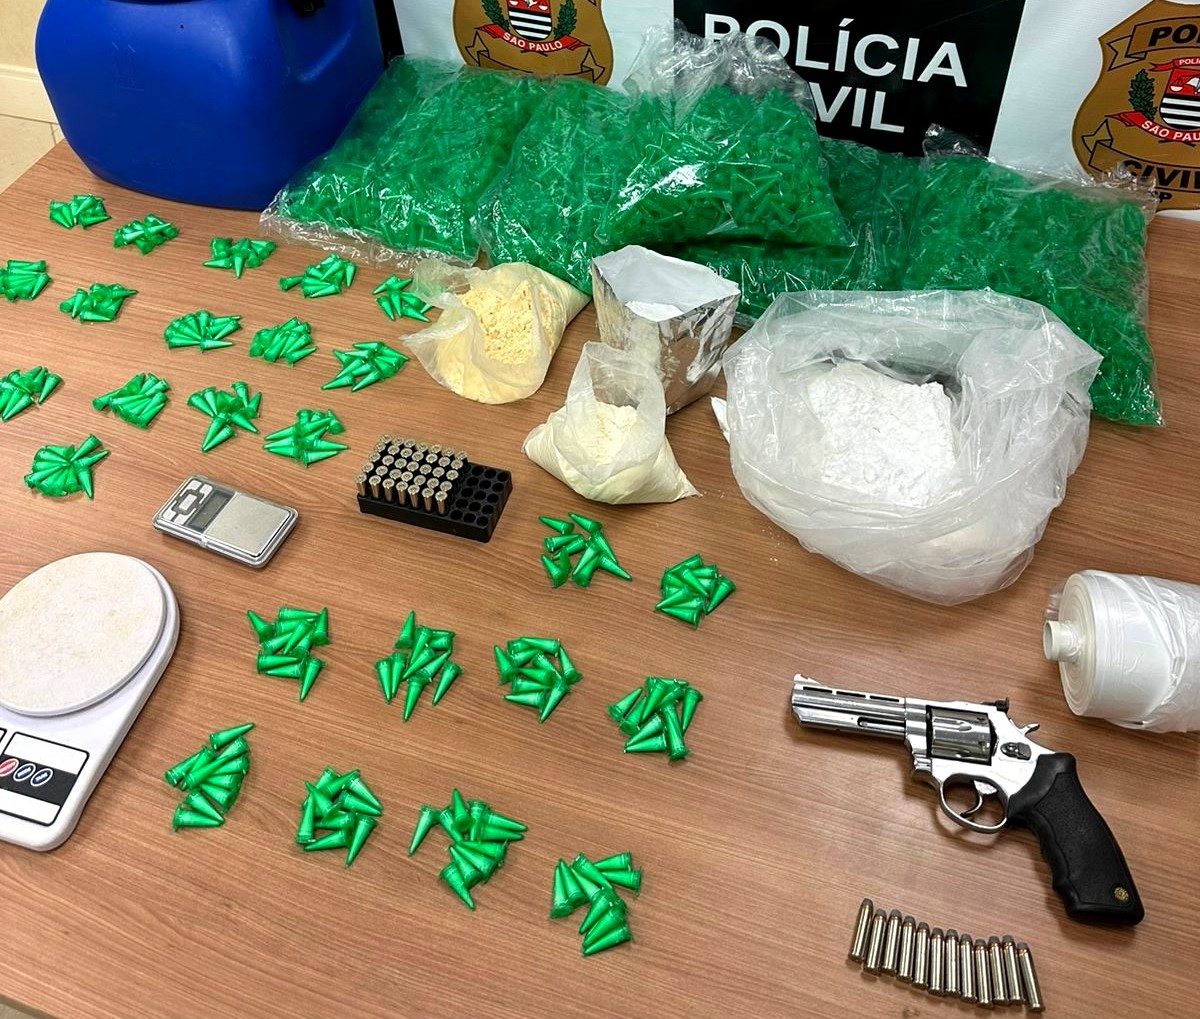 Polícia Civil descobre 'casa-bomba' e apreende grande quantidade de drogas em Piracicaba